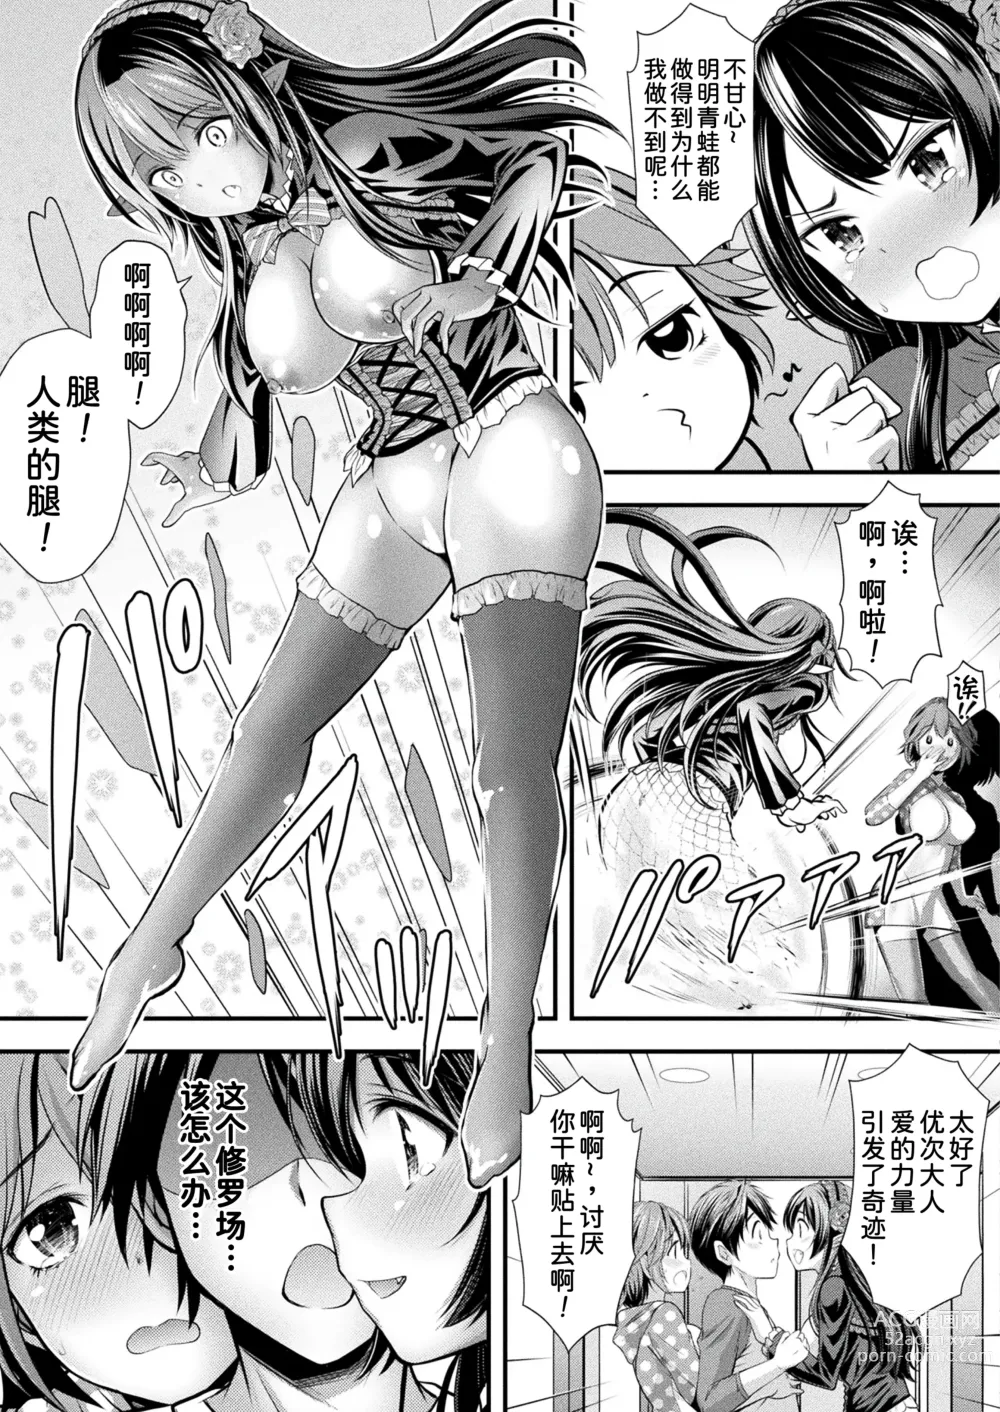 Page 20 of manga Herptile Girls Kouhen